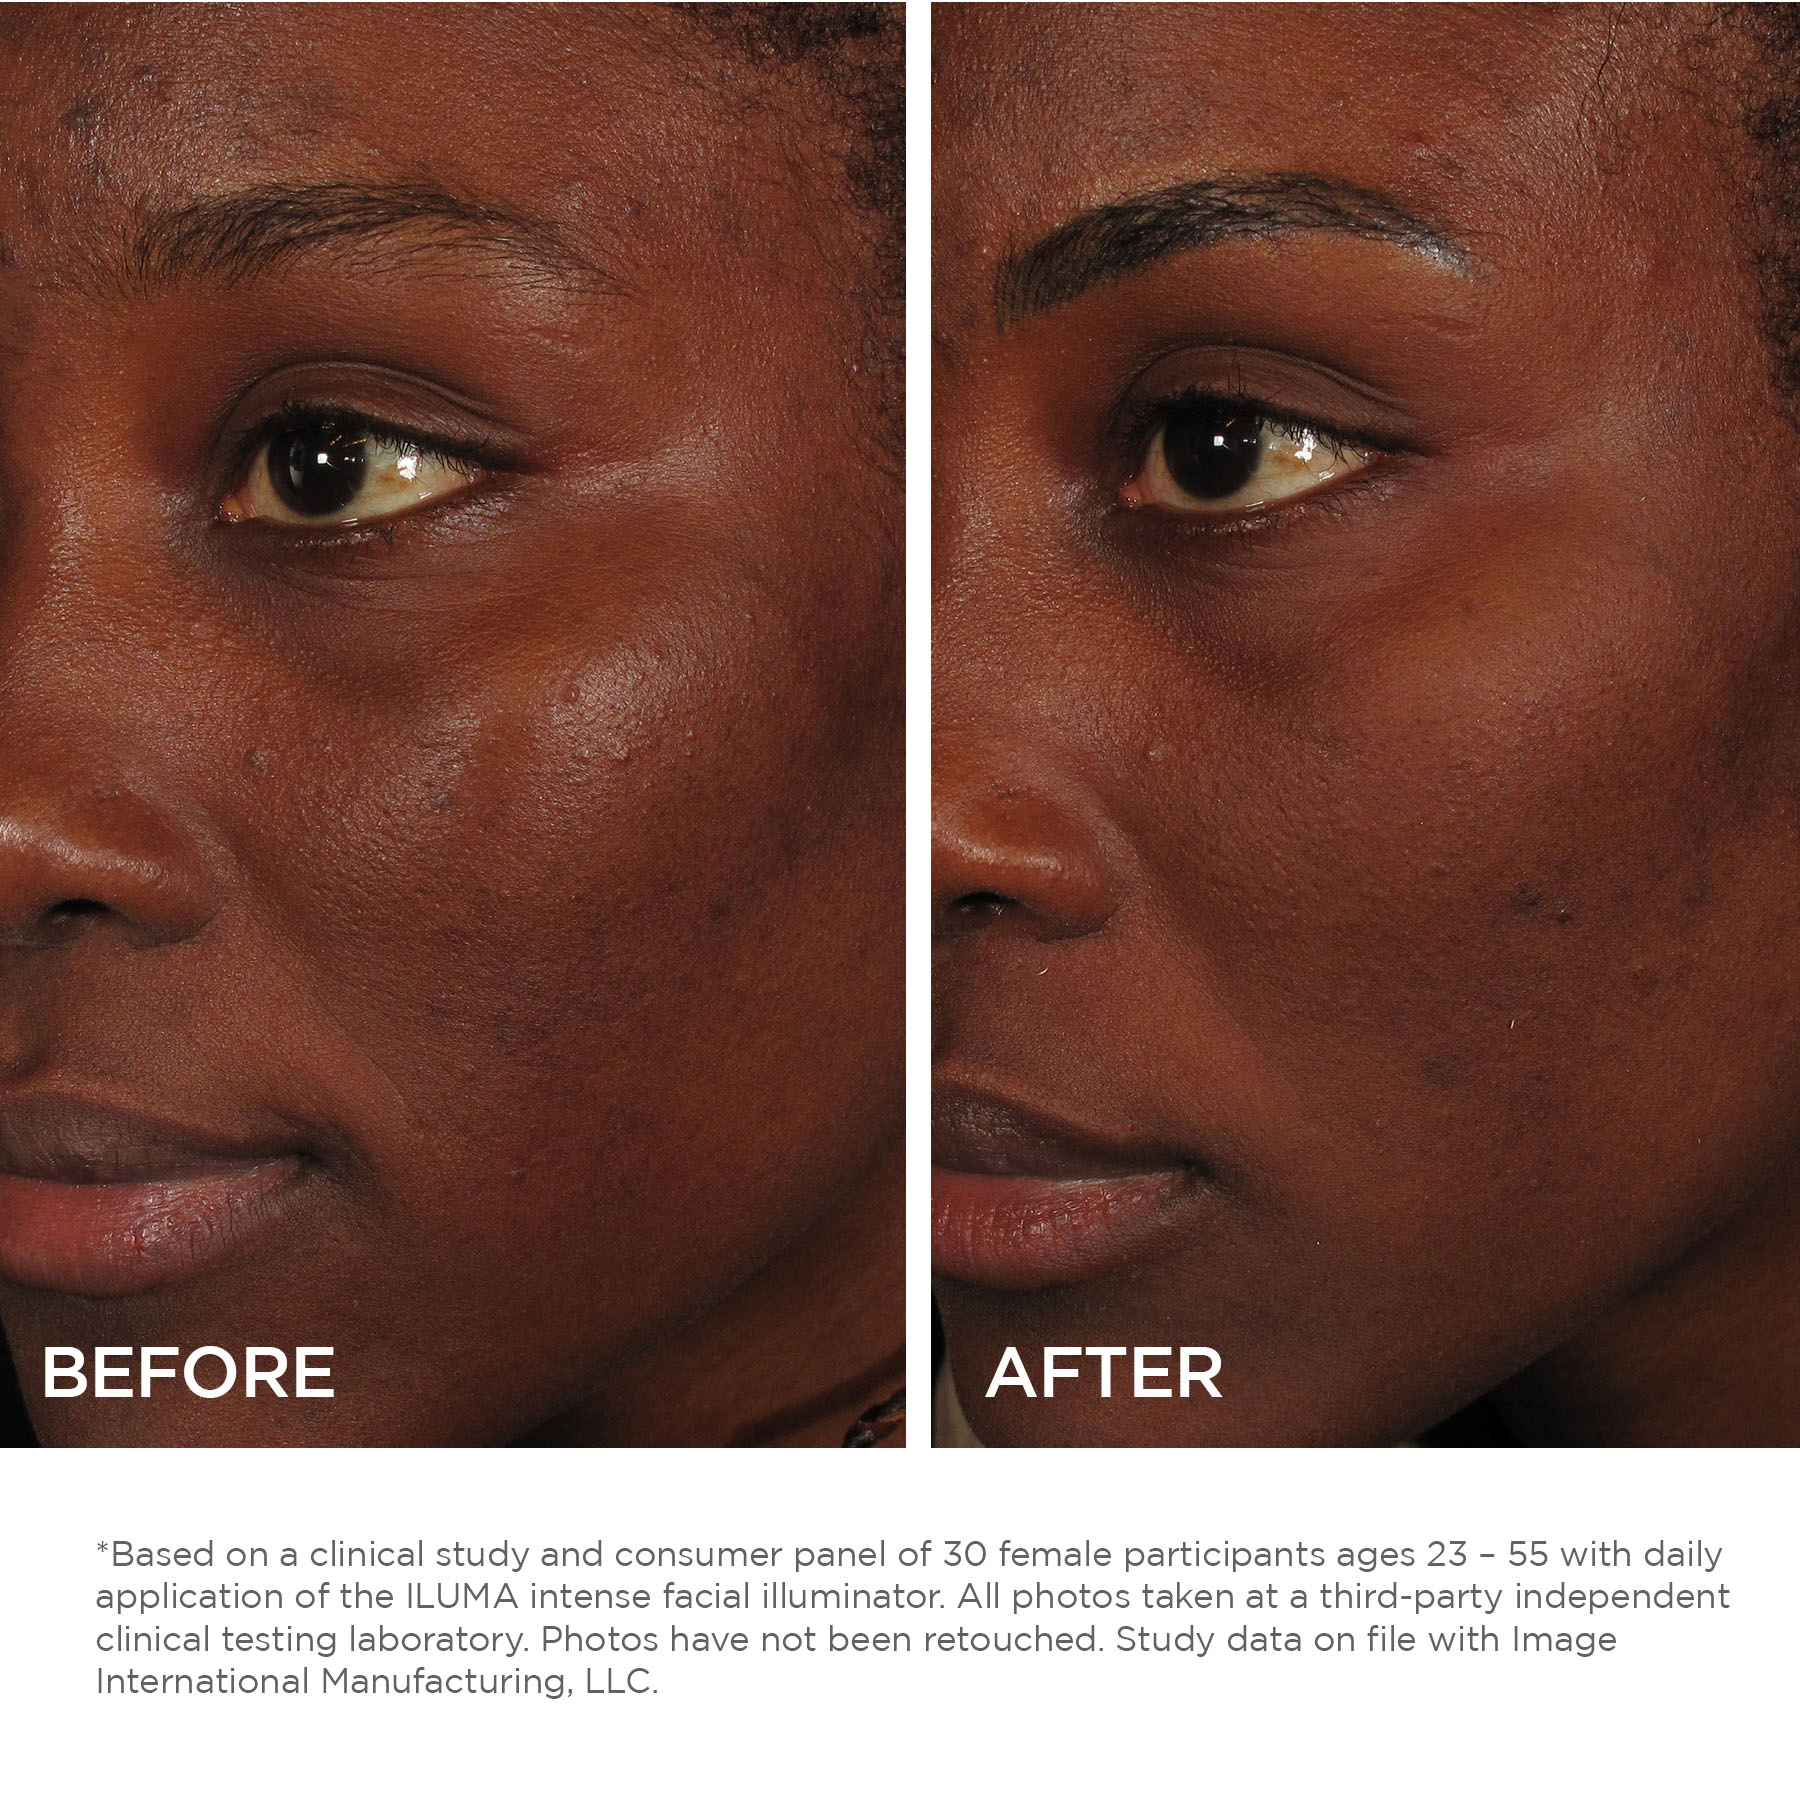 Before and After - ILUMA Intense Facial Illuminator